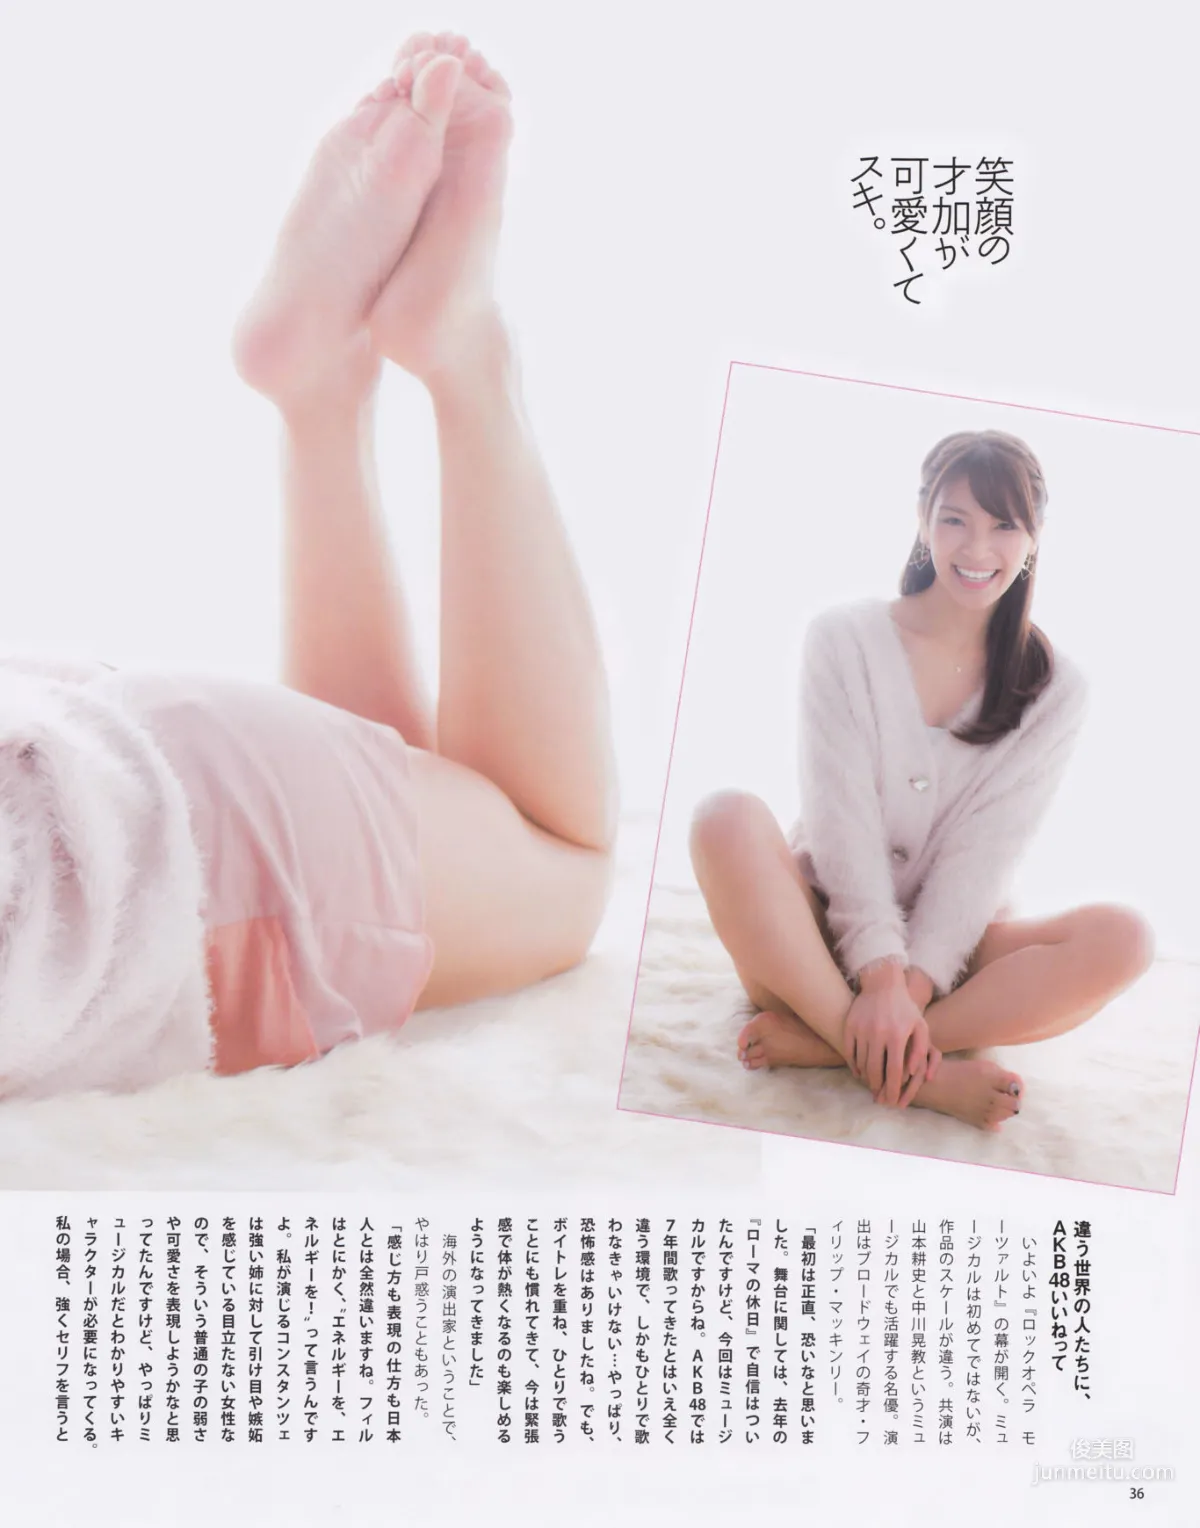 [Bomb Magazine] 2013年No.03 渡边麻友 秋元才加 AKB48 写真杂志23